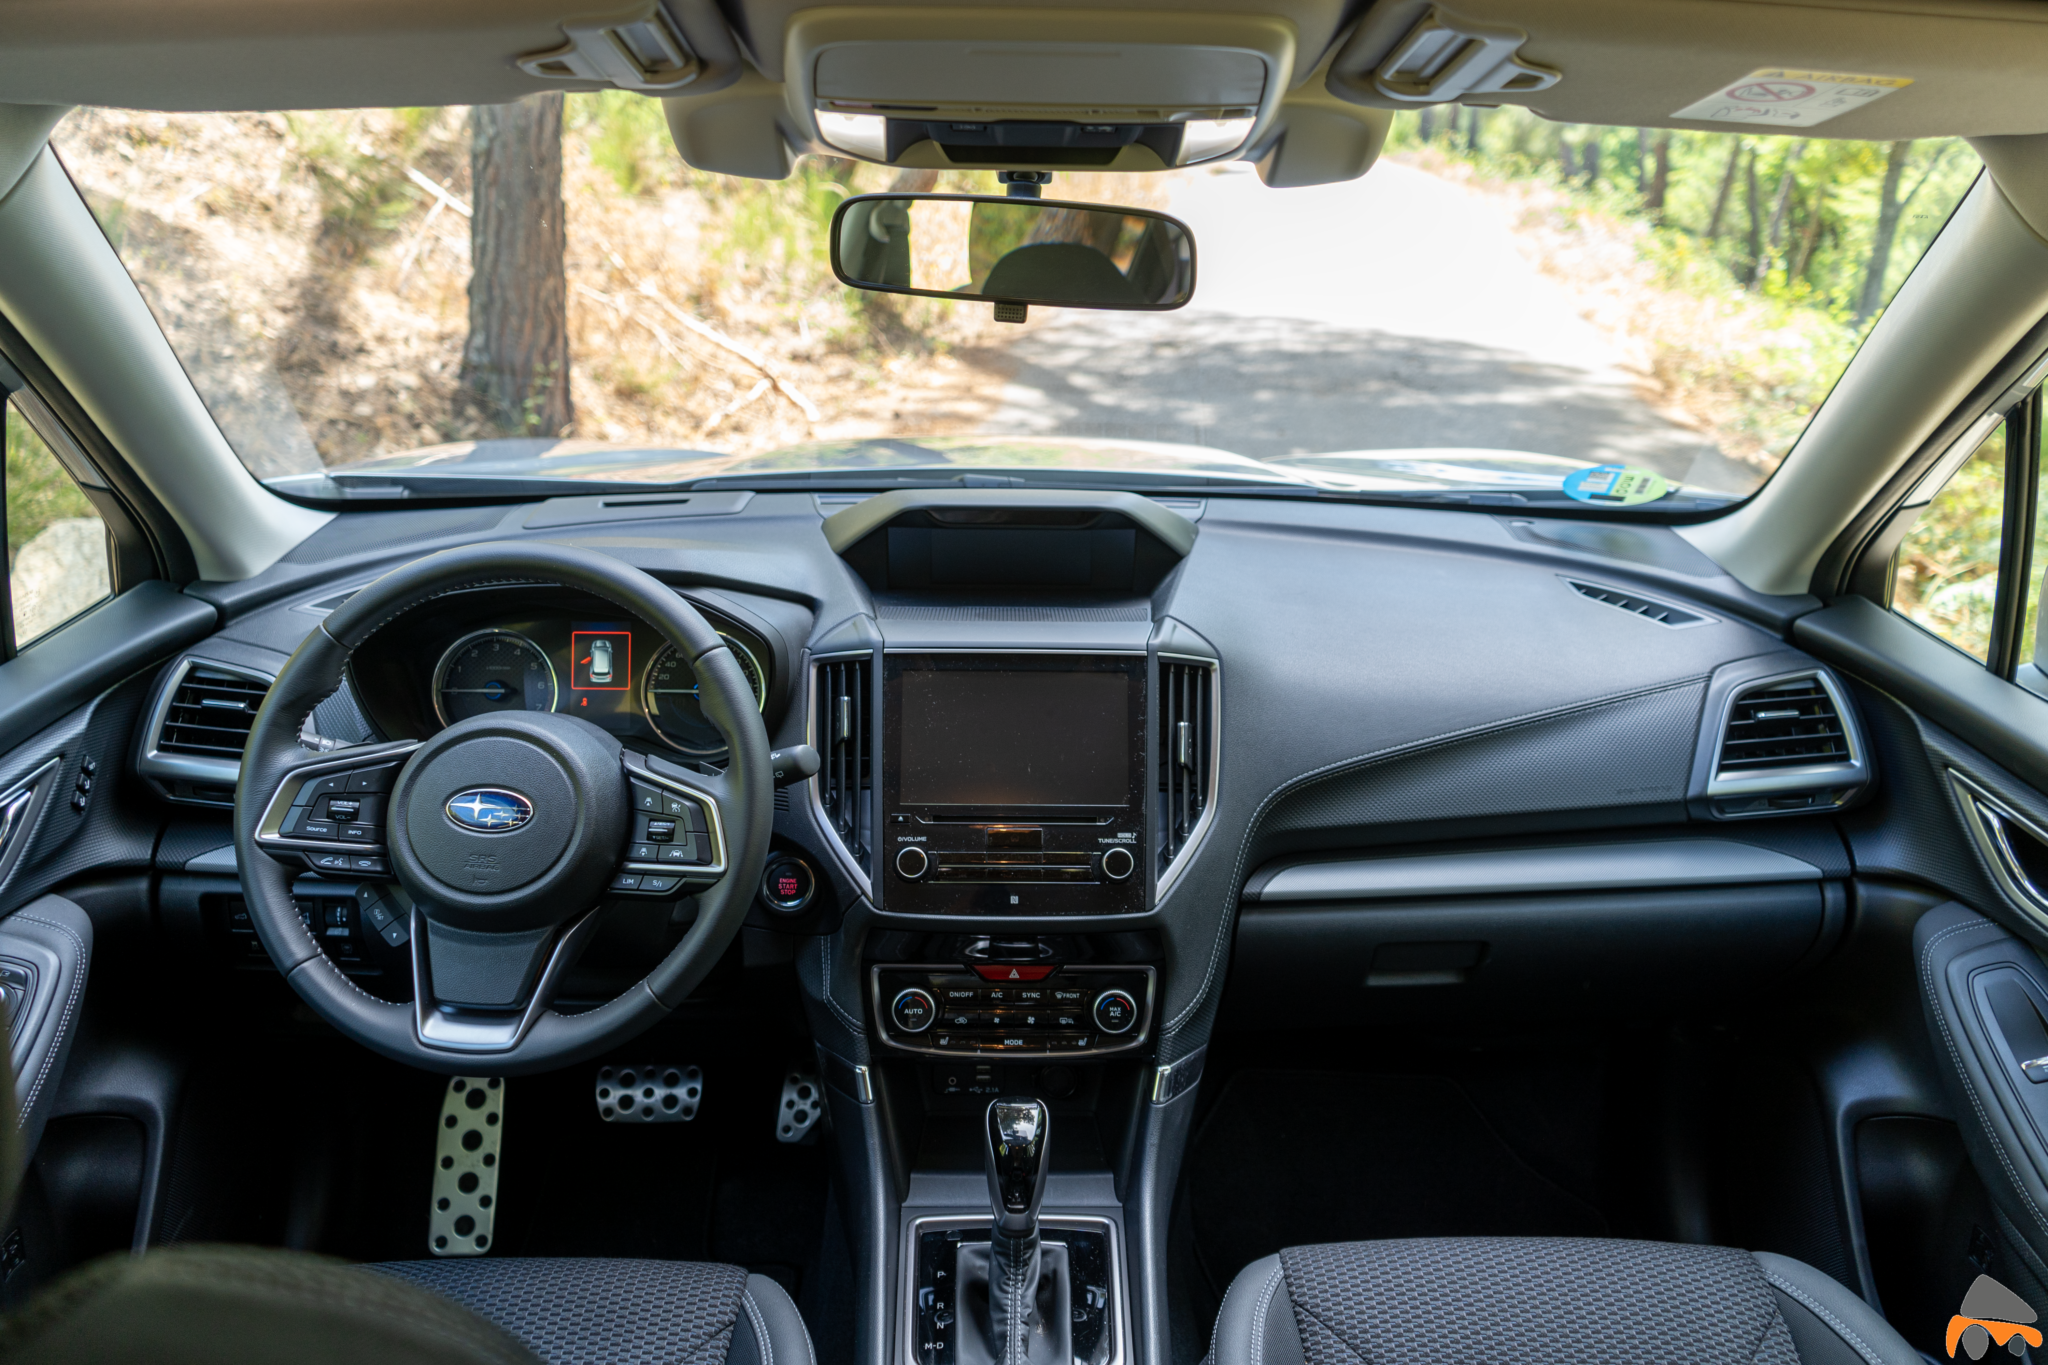 Salpicadero vista frontal completo Subaru Forester Hybrid - Prueba Subaru Forester Eco Hybrid 2020: Todo un auténtico todoterreno